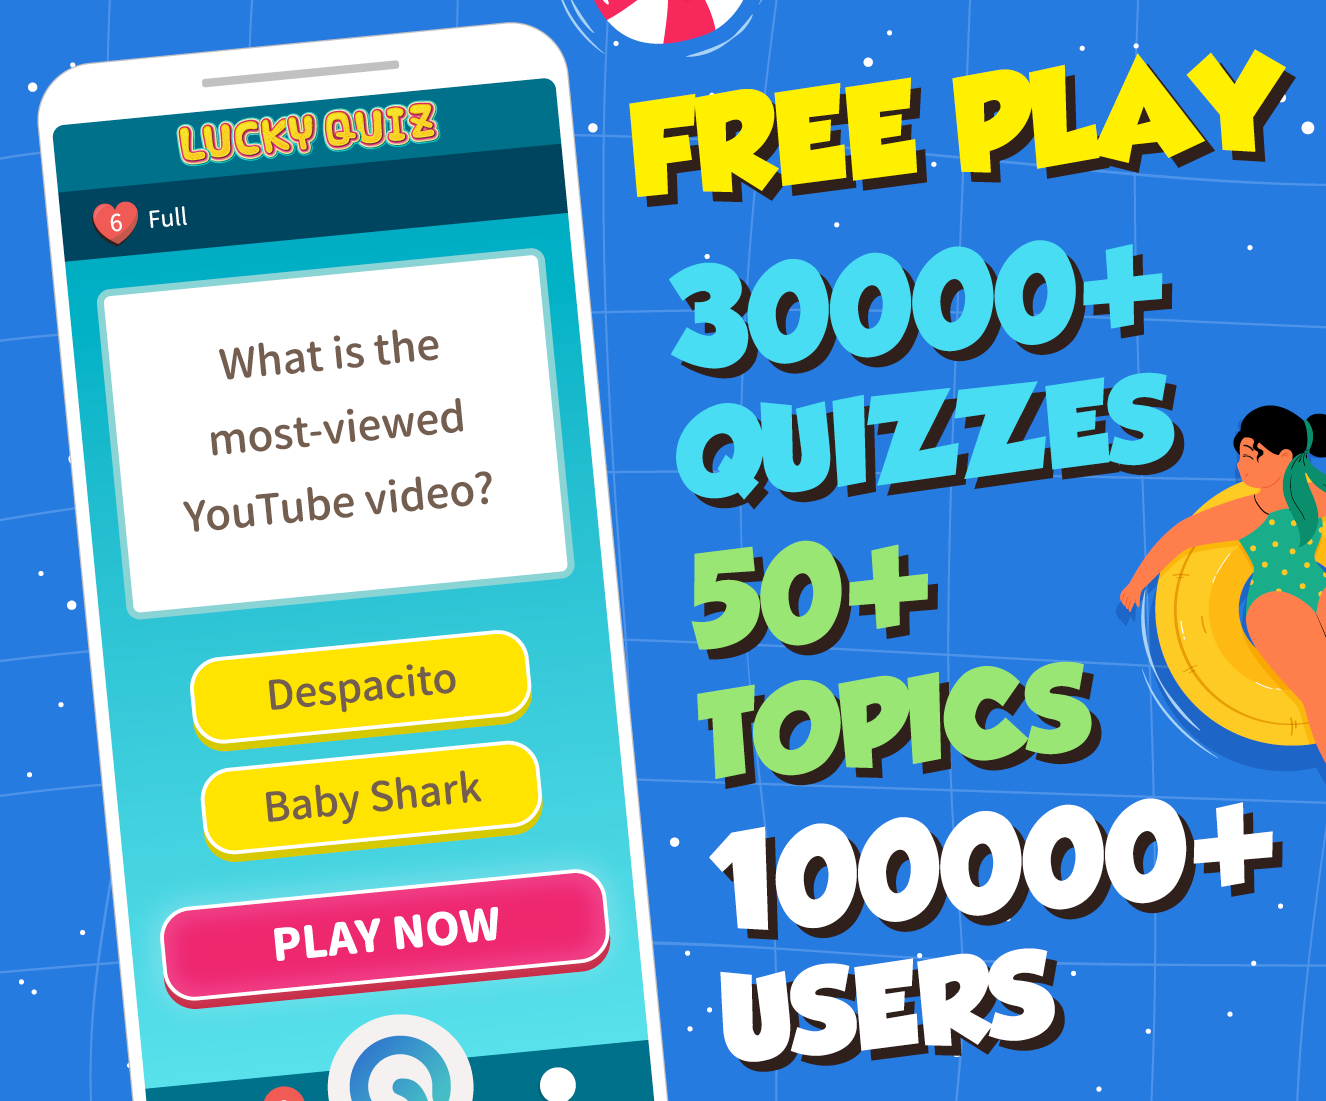 Screenshot 1 of Divertido jogo de perguntas e respostas - Lucky Quiz 